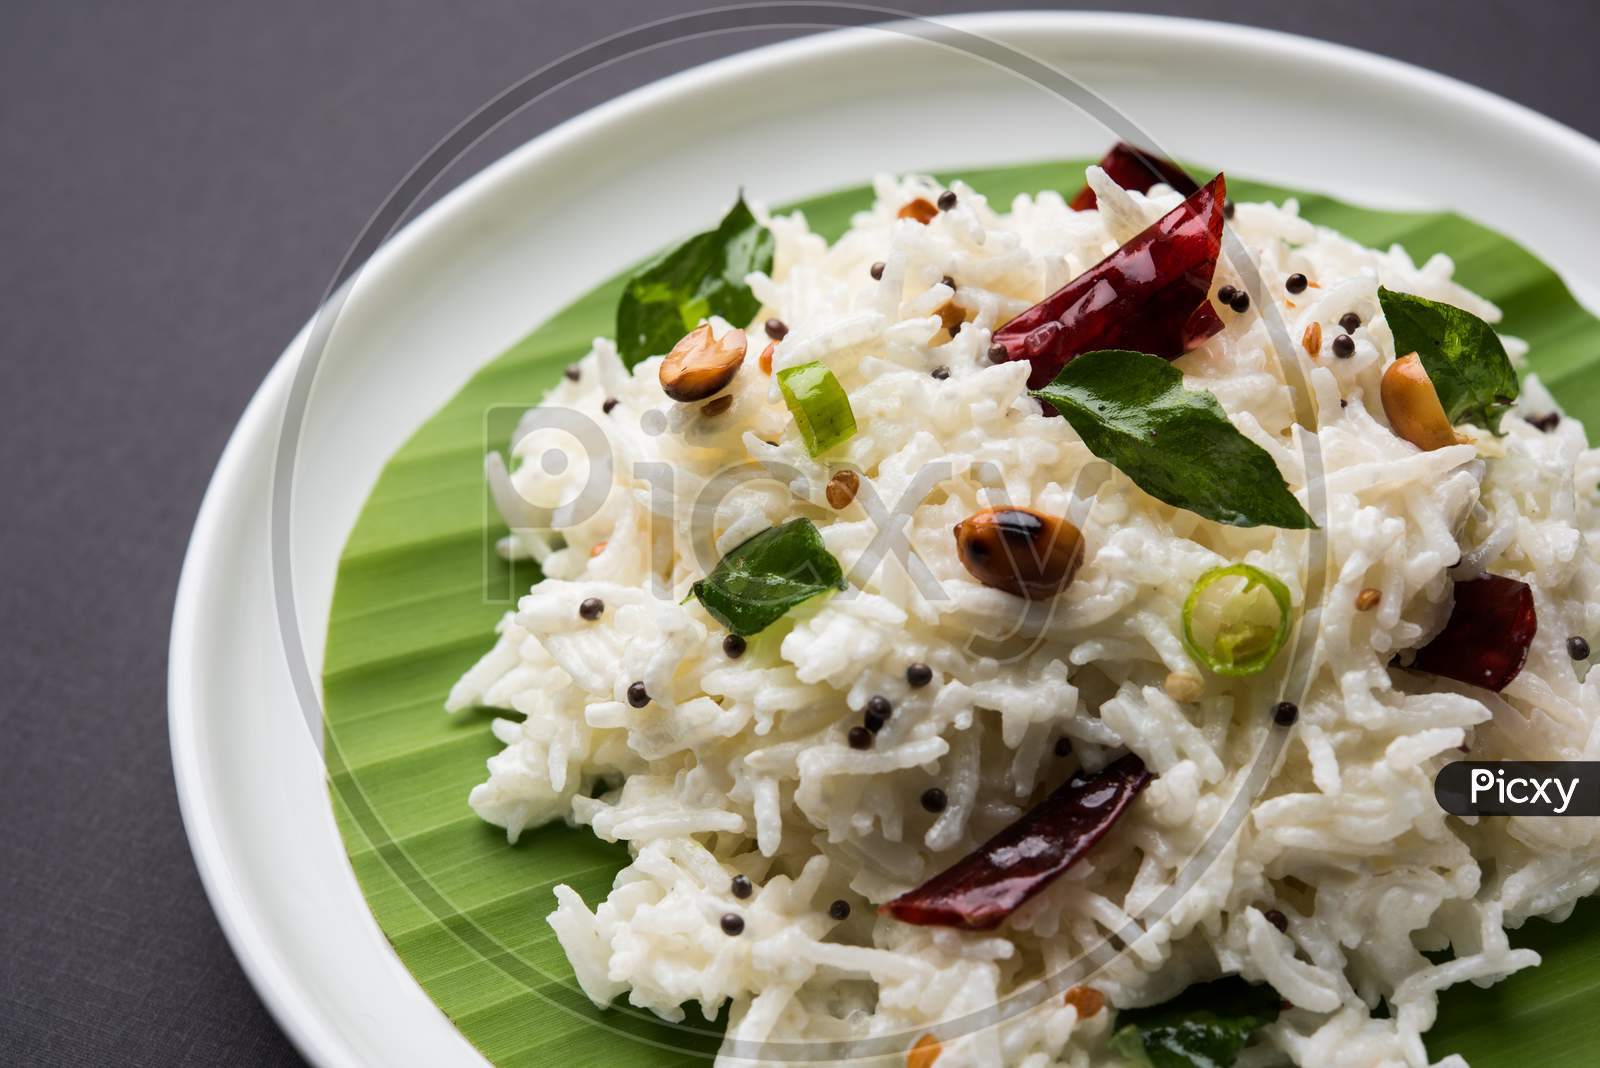 Curd Rice / Dahi Bhat